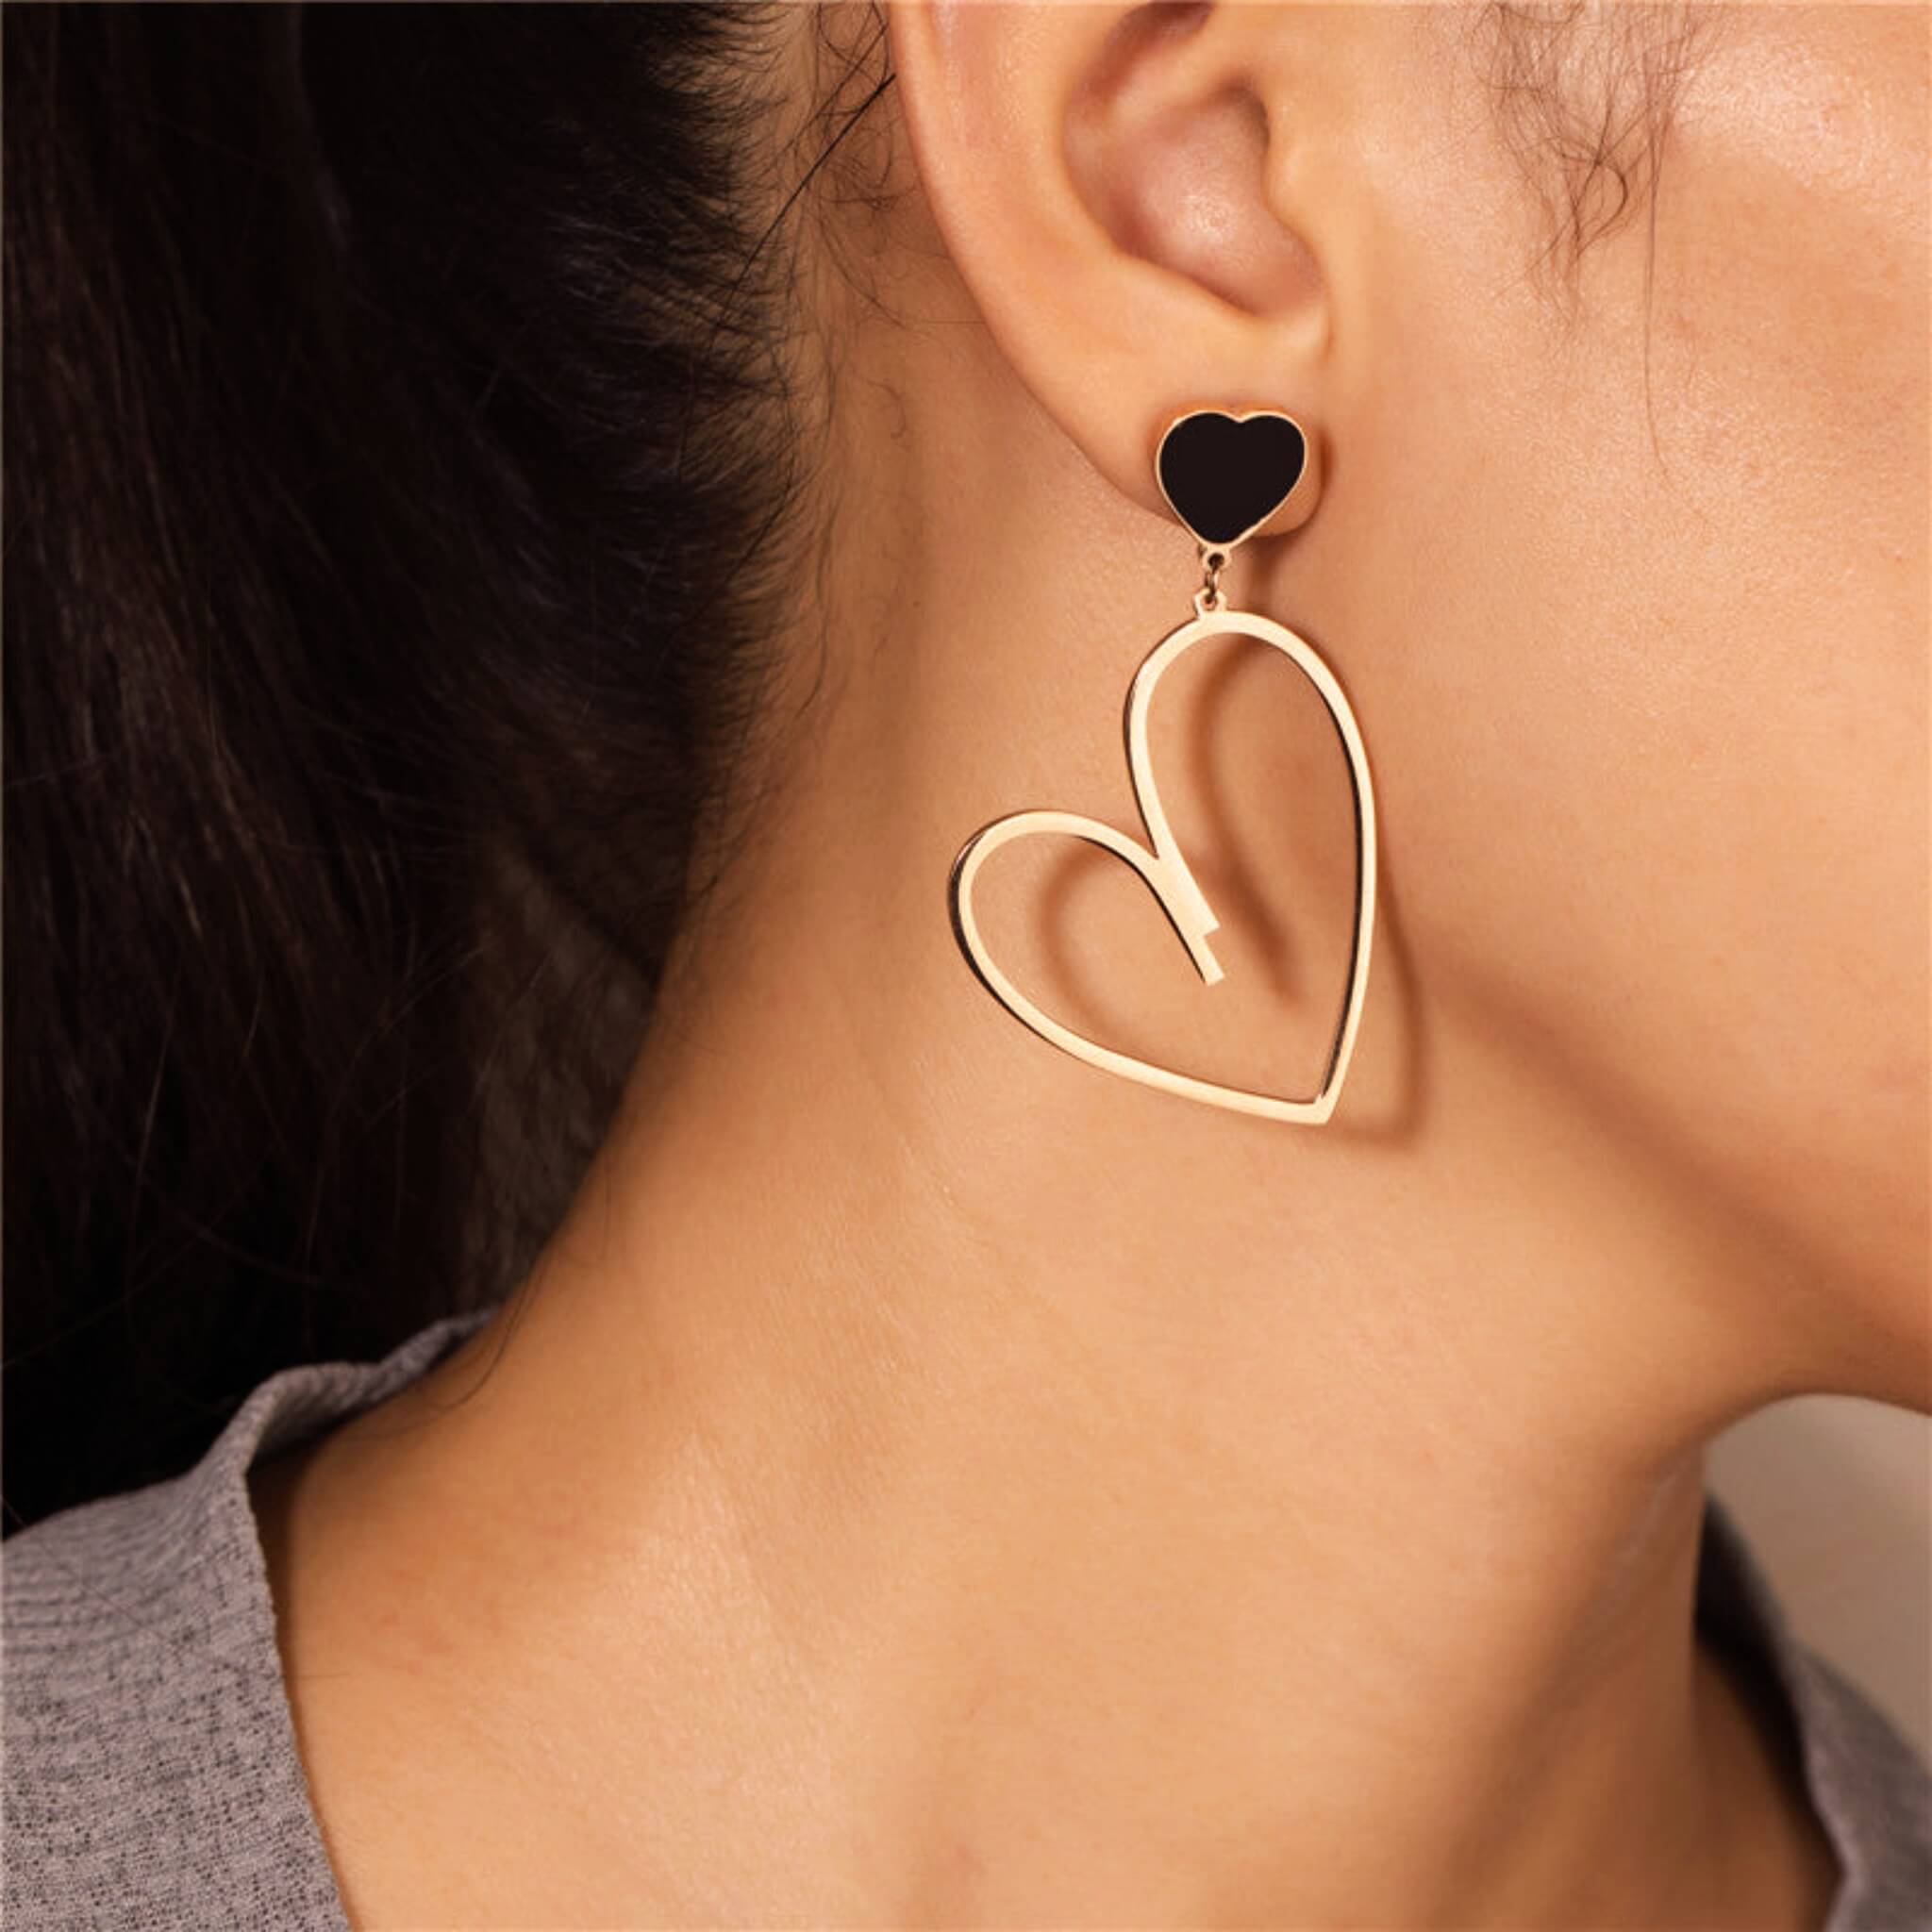 Minimalist Heart Stud Earrings  UponBasics   